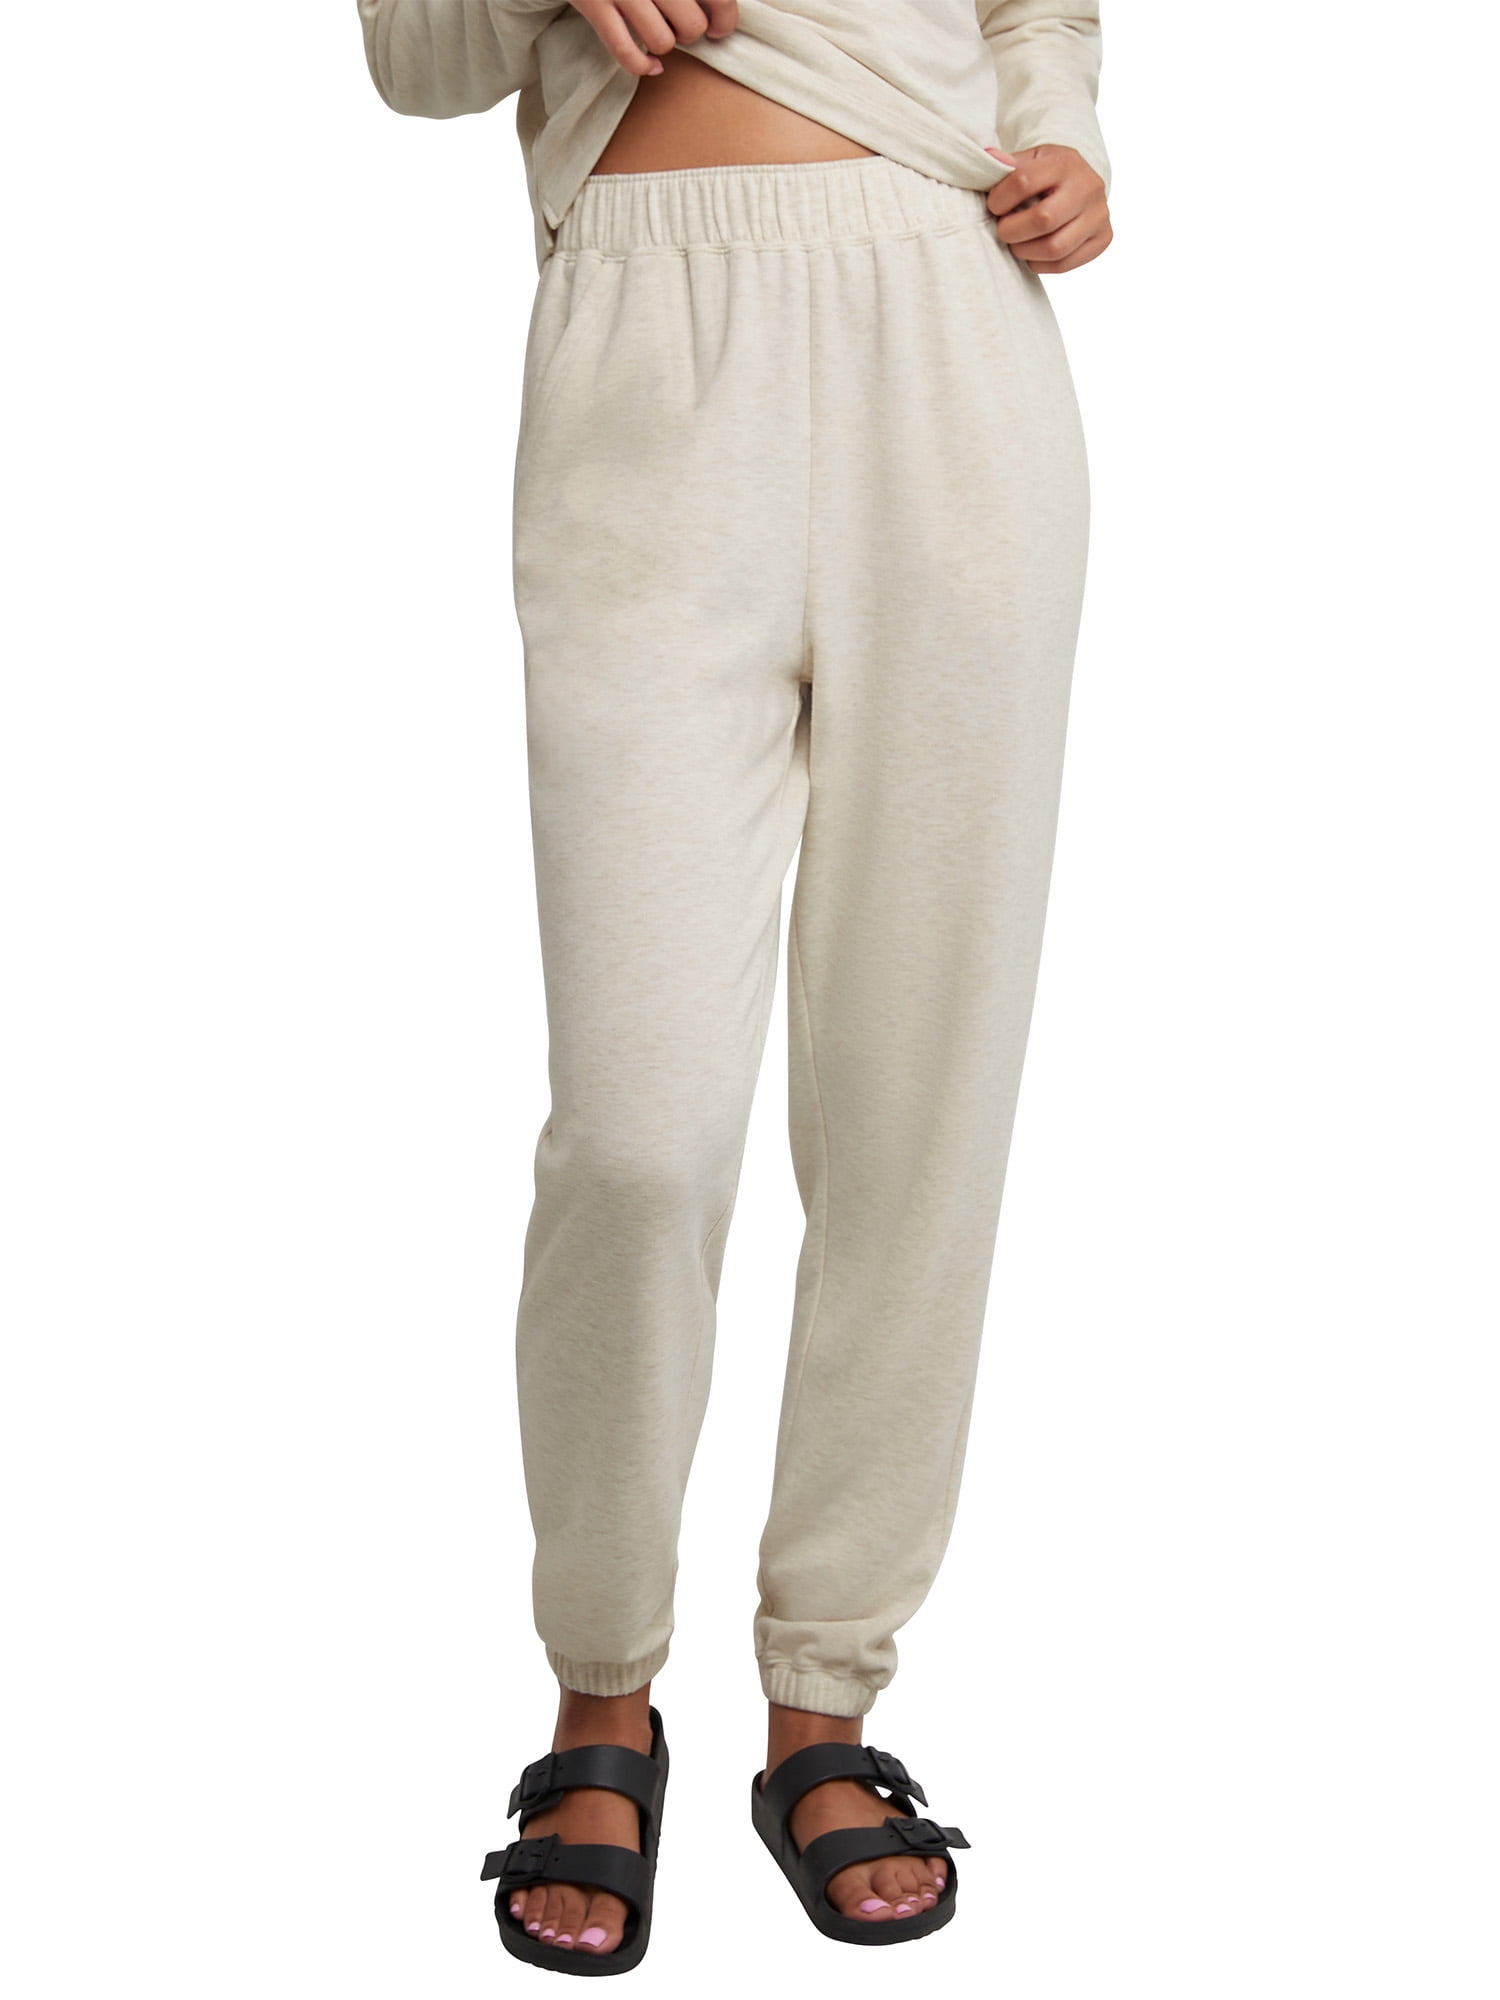 Hanes Women's Cozy Fleece Pants 